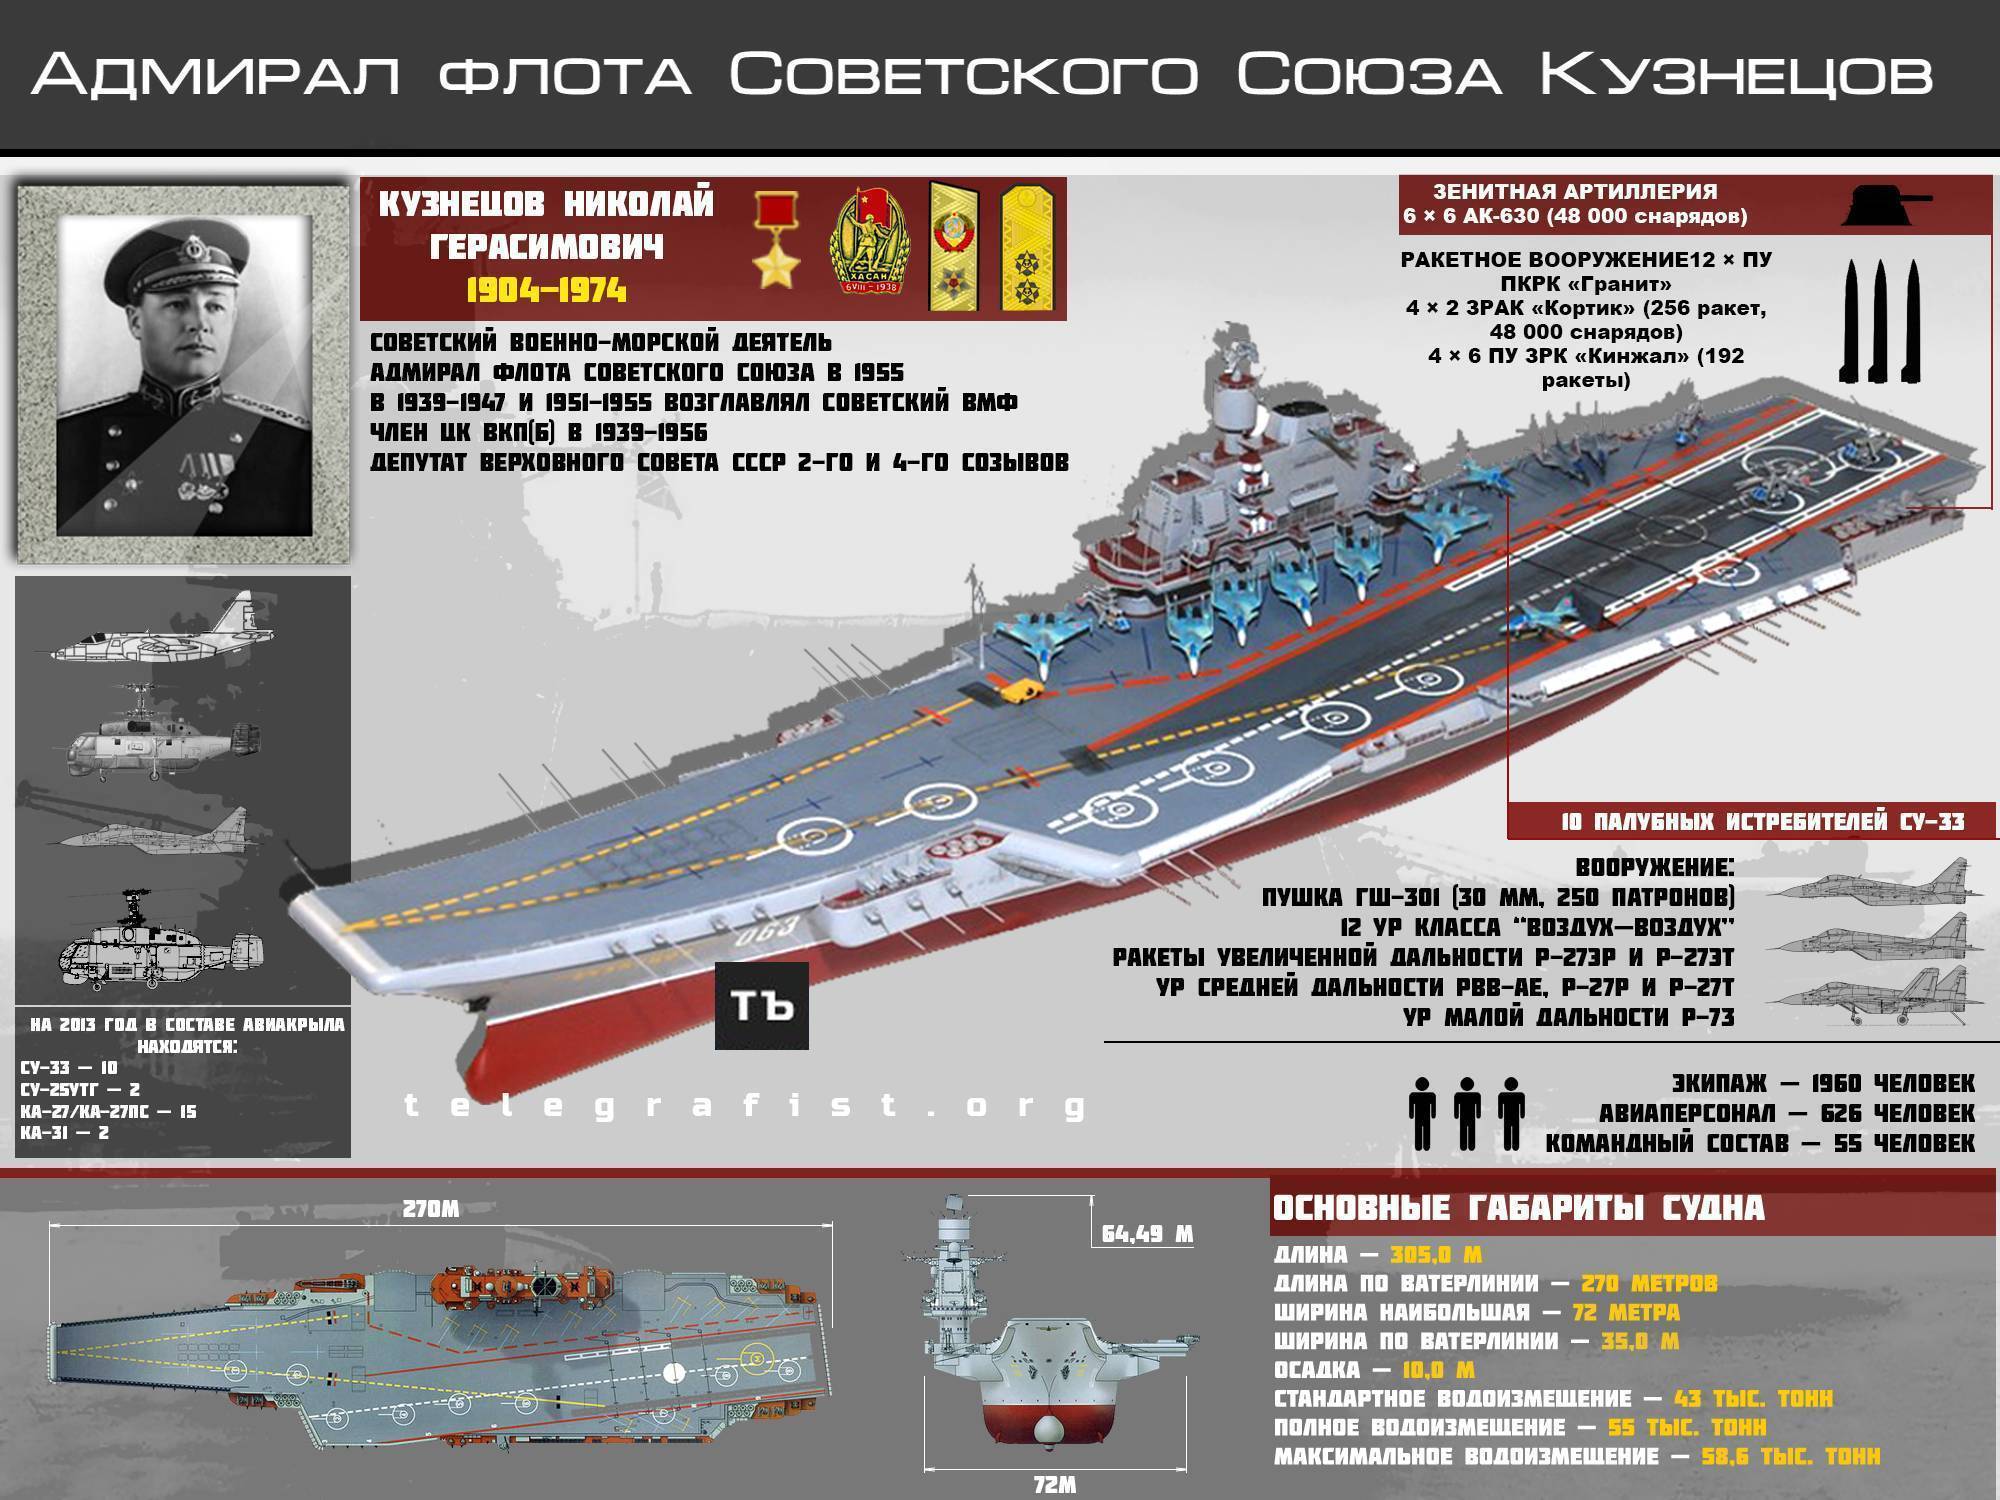 Авианосец адмирал кузнецов - тавкр, тяжелый авианесущий крейсер проекта 1143, история создания, конструкция и вооружение, характеристики